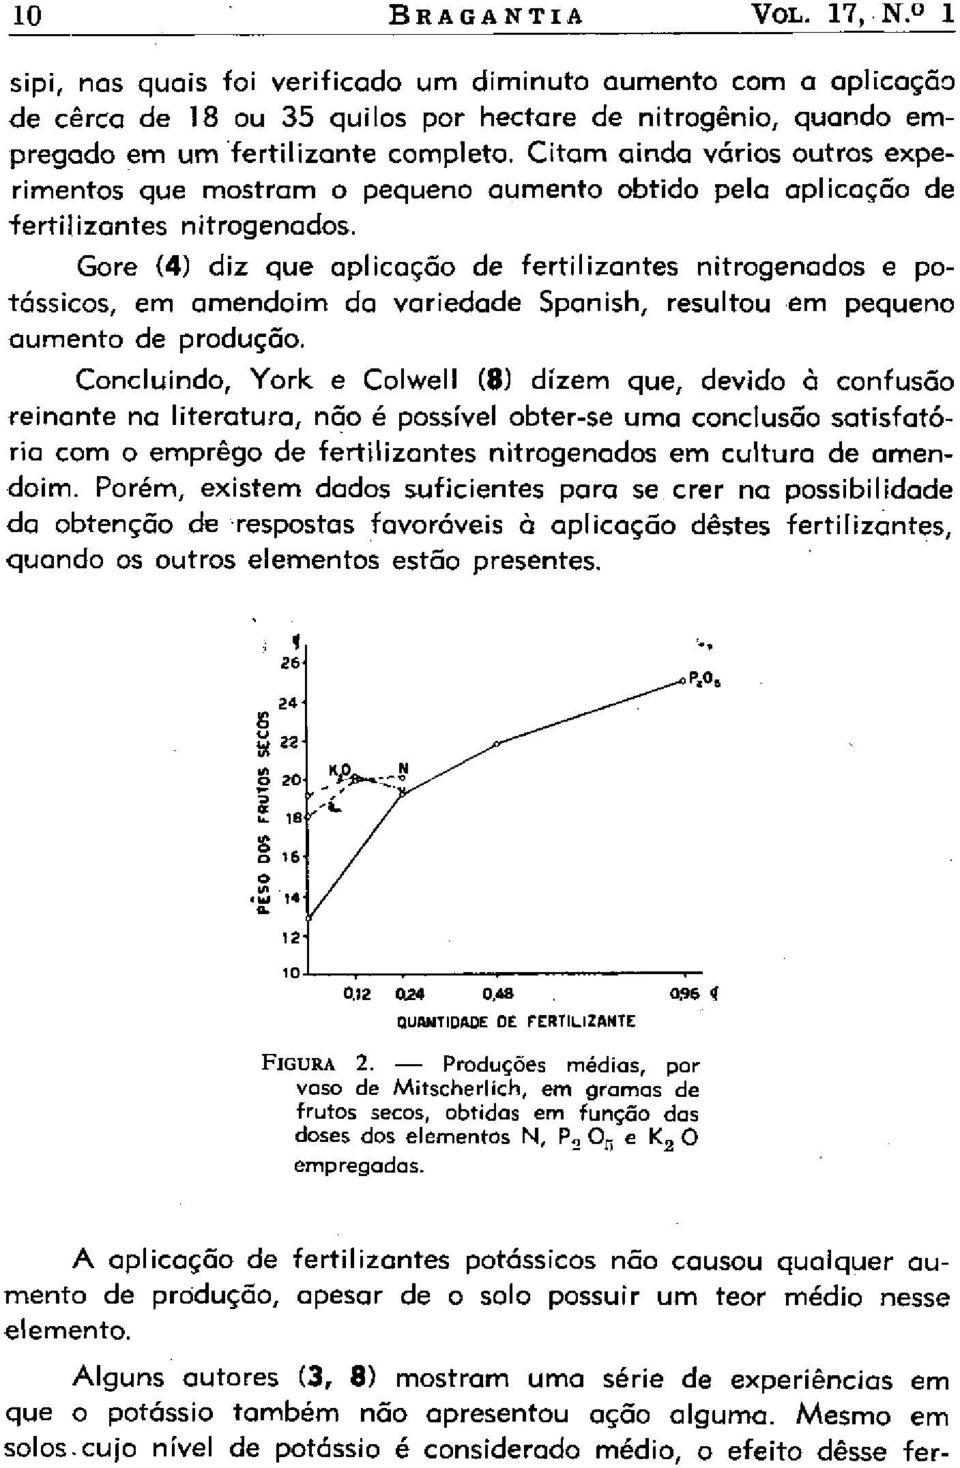 Gore (4) diz que aplicação de fertilizantes nitrogenados e potássicos, em amendoim da variedade Spanish, resultou em pequeno aumento de produção.